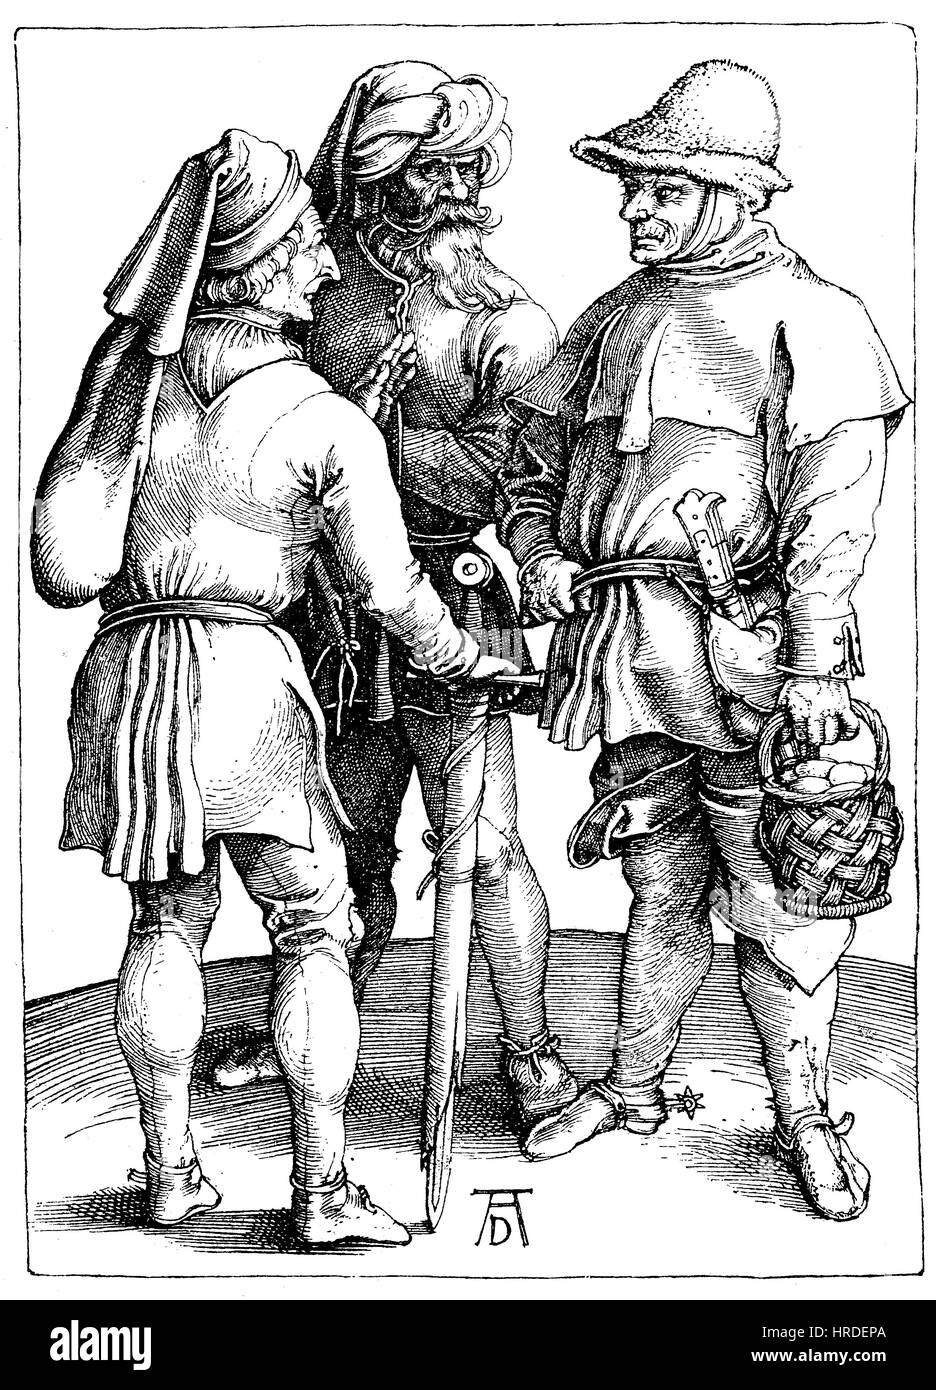 Différents types de paysans au 15ème siècle, gravure sur cuivre par Albrecht Duerer, Allemagne, la reproduction d'une gravure sur bois du xixe siècle, 1885 Banque D'Images